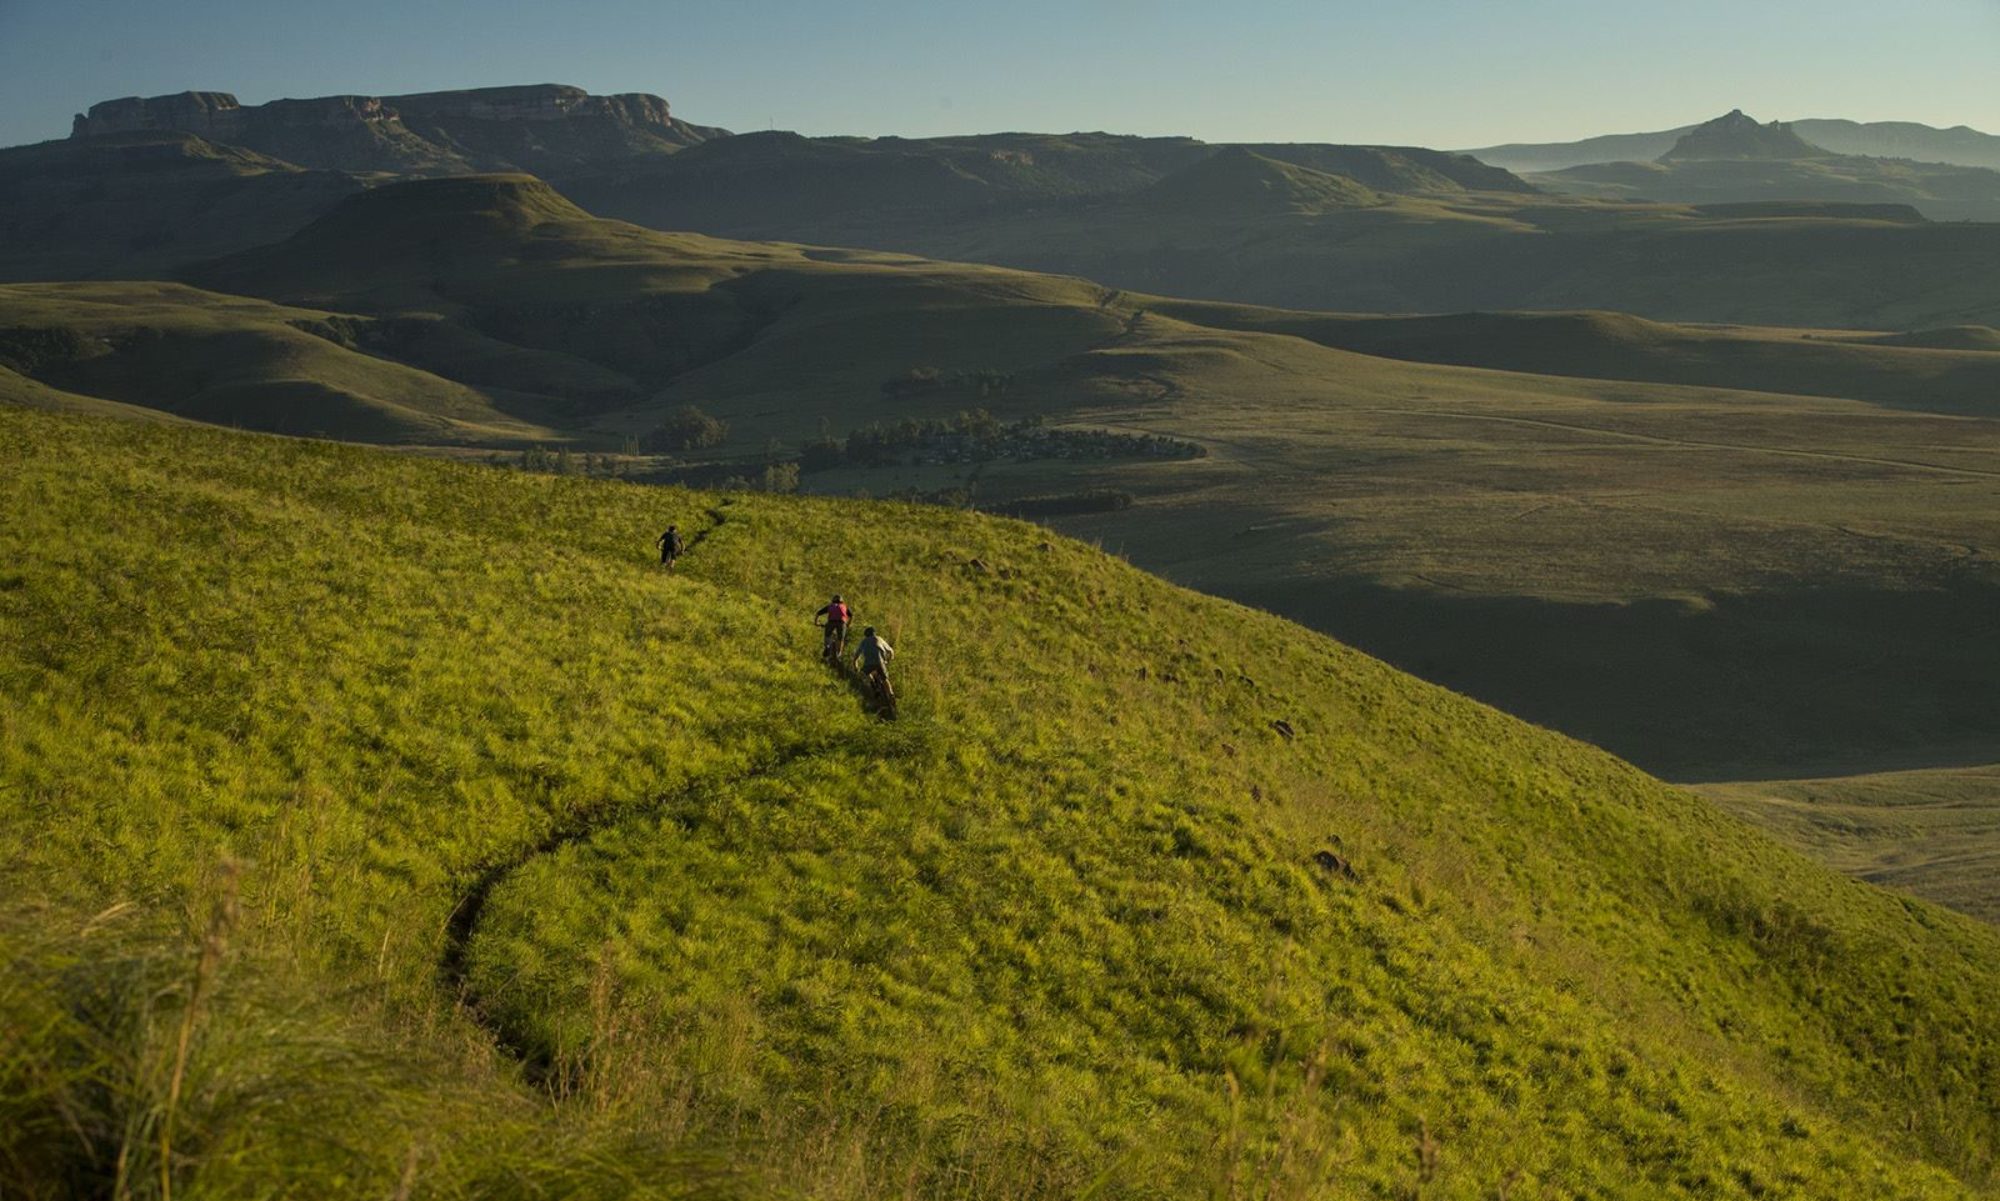 Drakensberg Trails